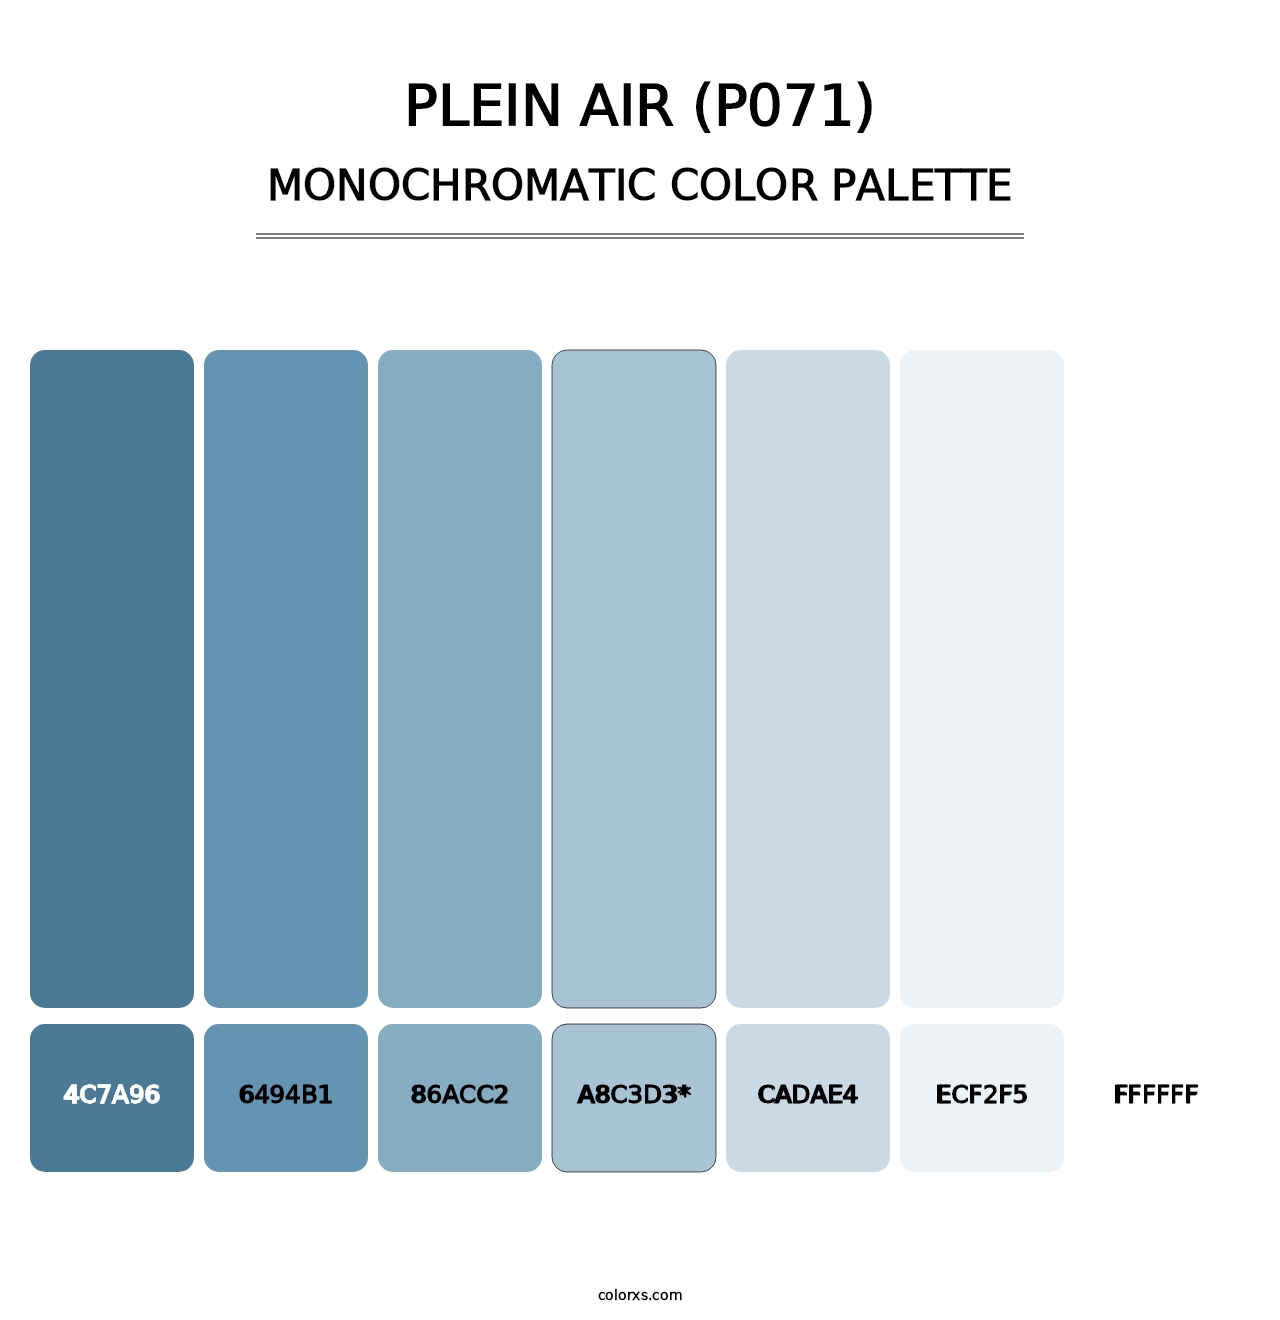 Plein Air (P071) - Monochromatic Color Palette